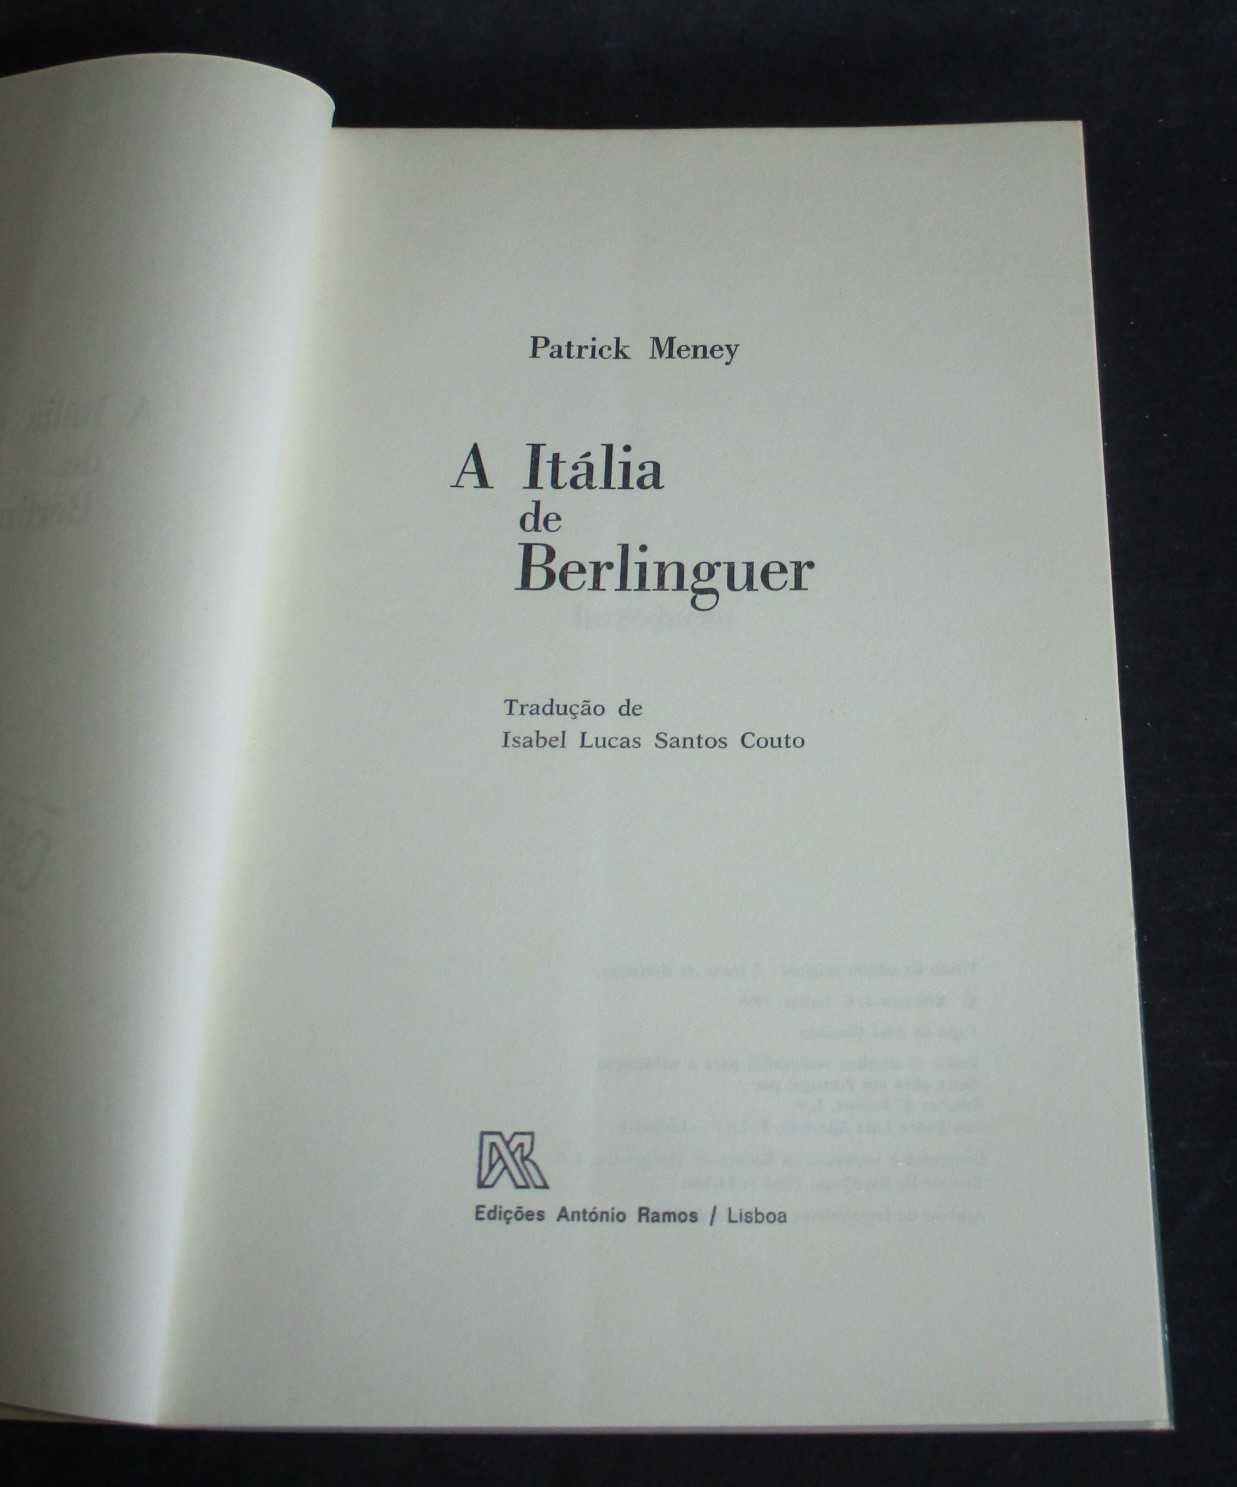 Livro A Itália de Berlinguer Patrick Meney